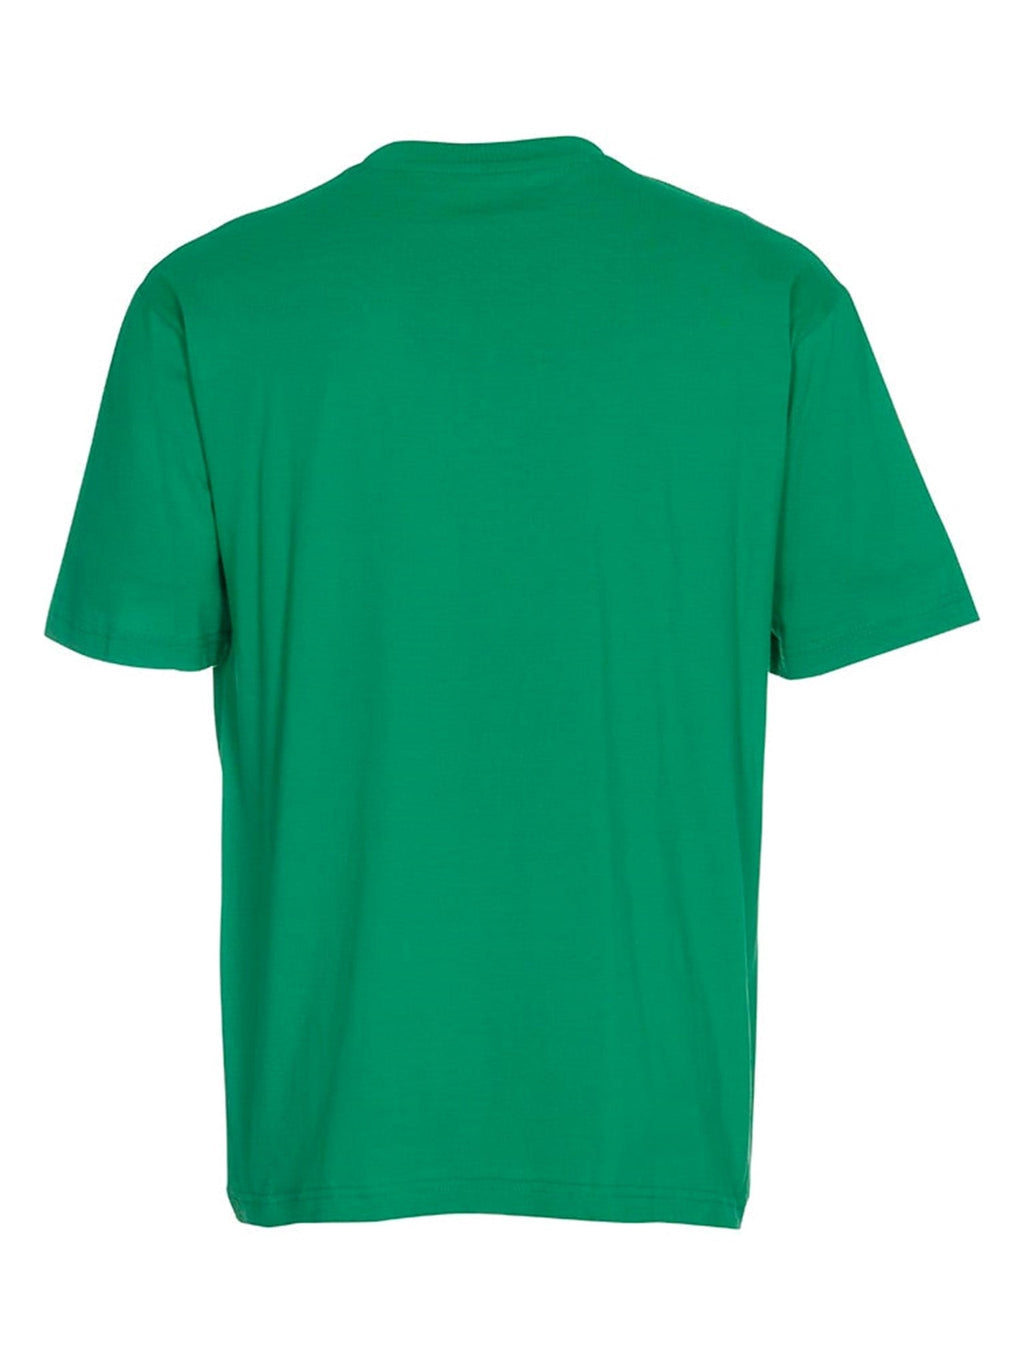 Negabaritiniai marškinėliai - žalia